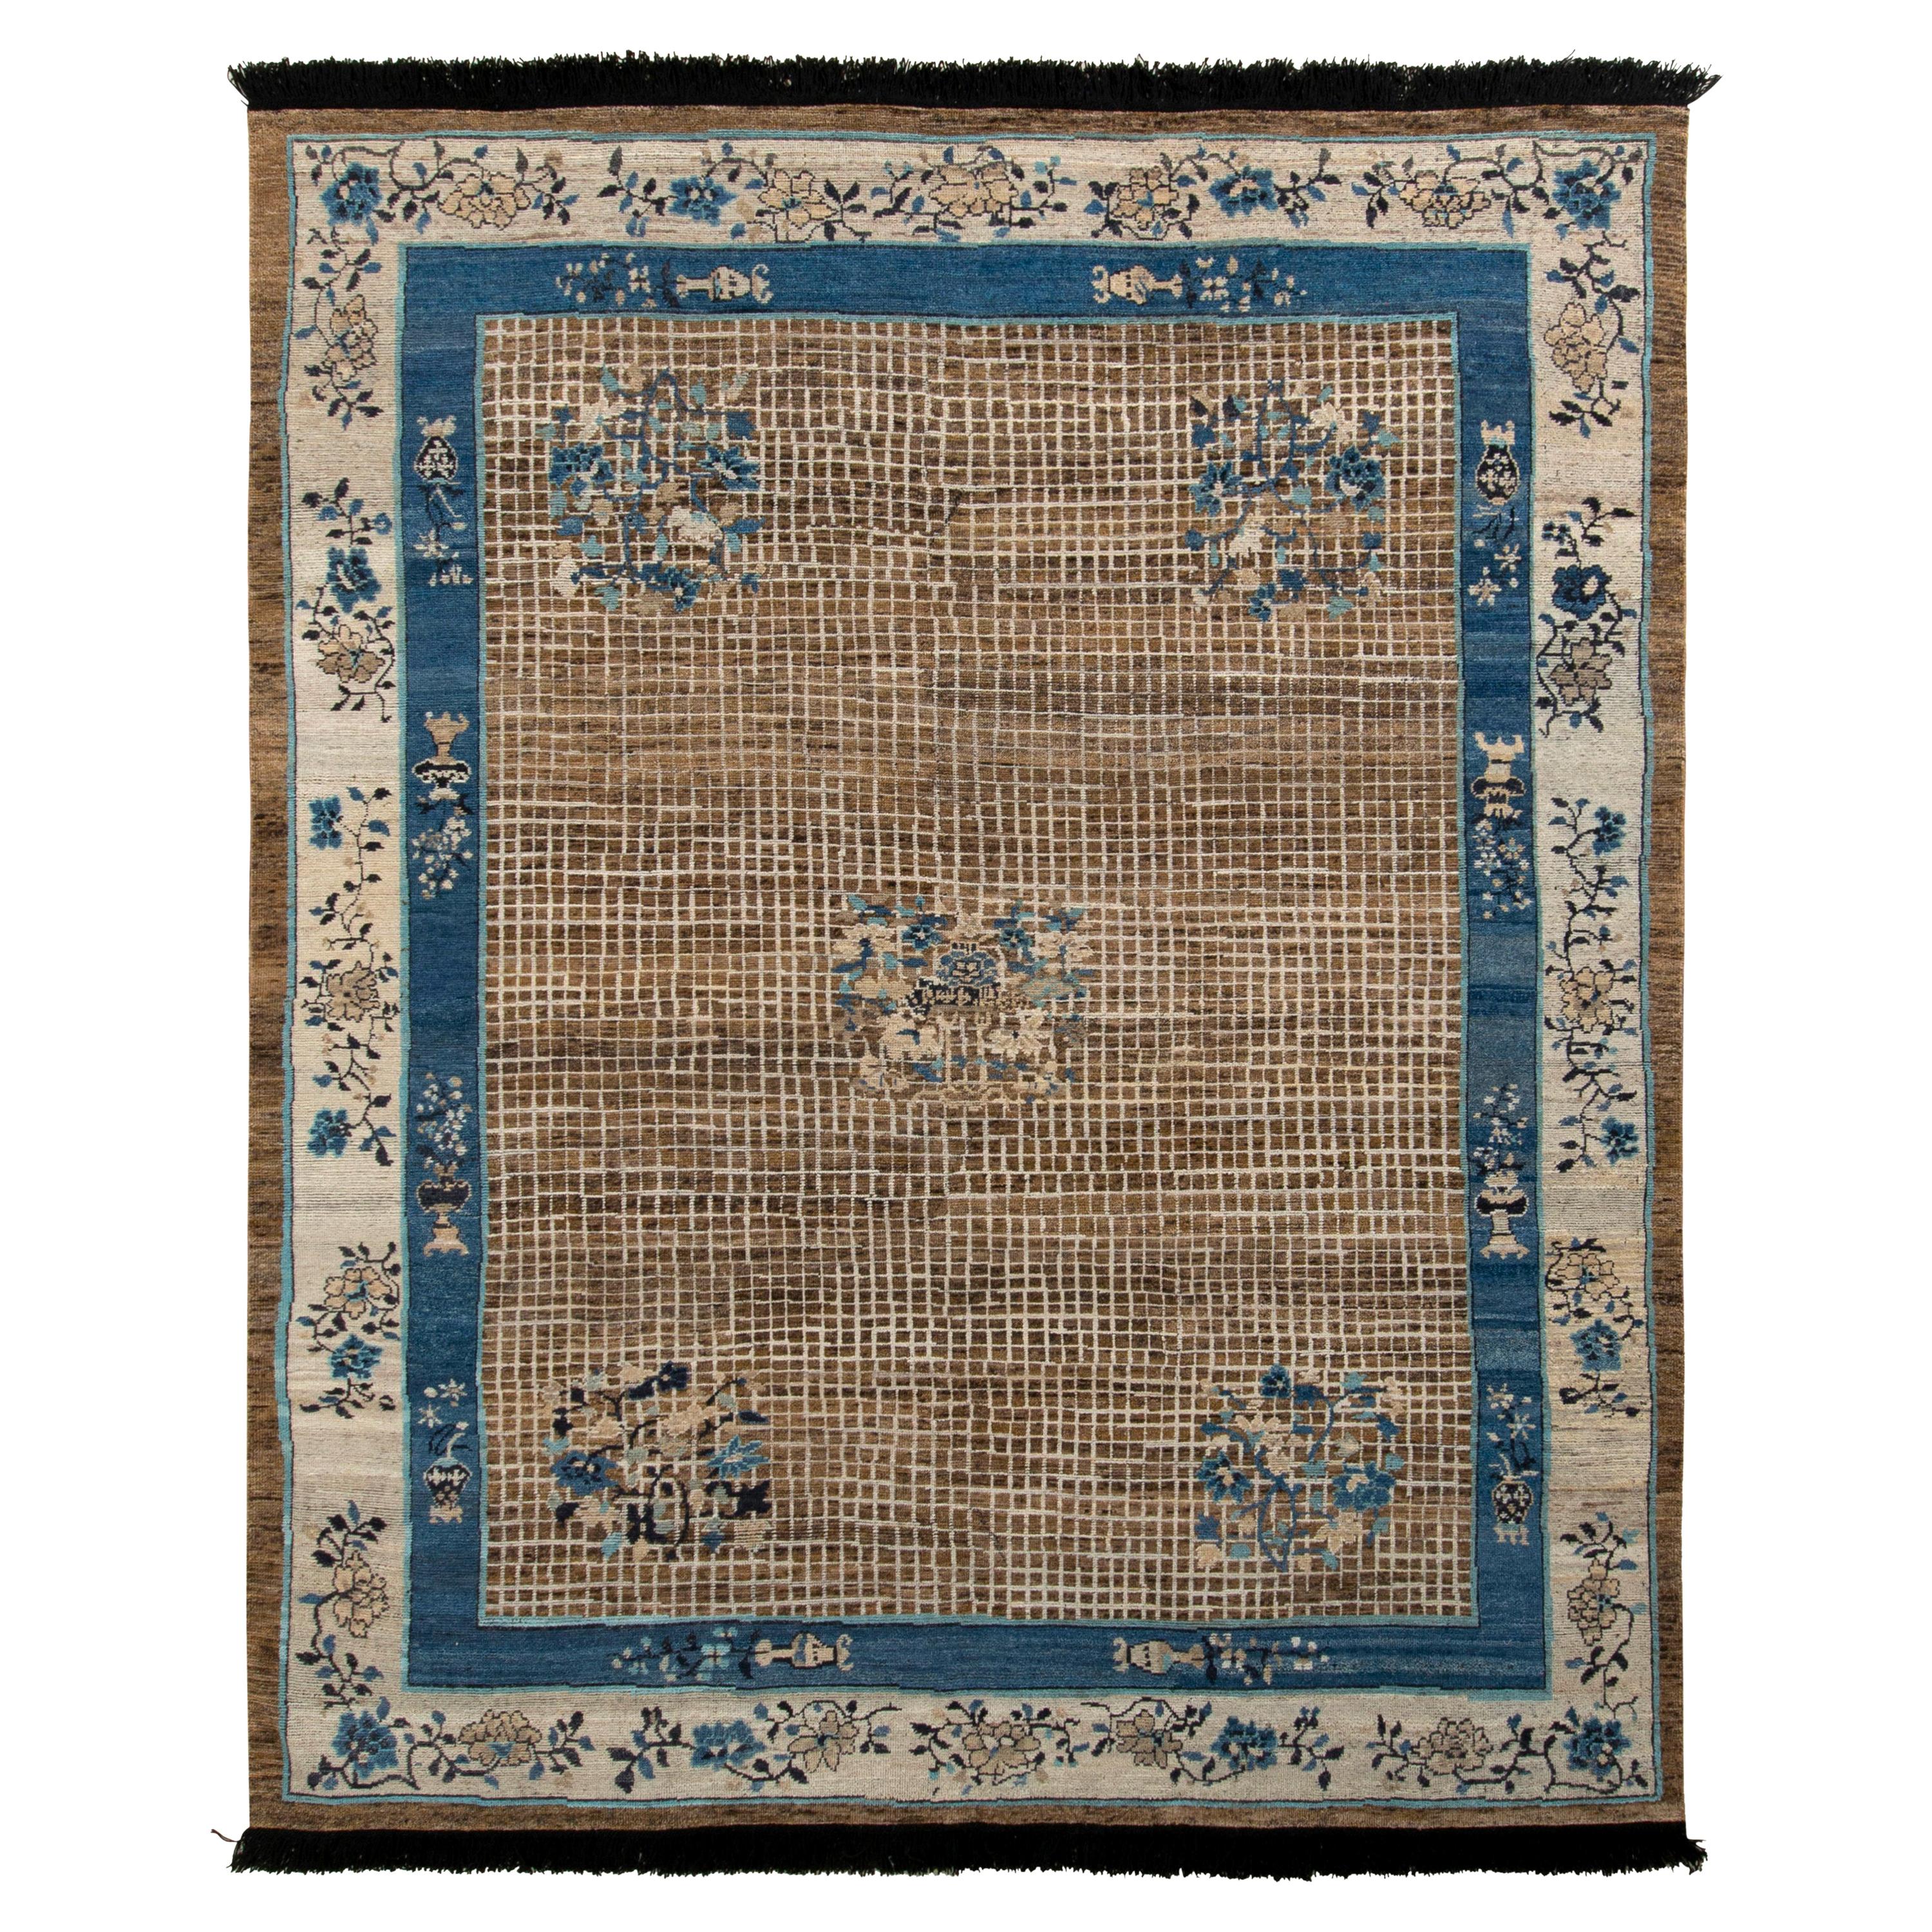 Chinesischer Teppich im Art-Déco-Stil von Teppich & Kilims in Beige-Braun und Blau mit Medaillonmuster